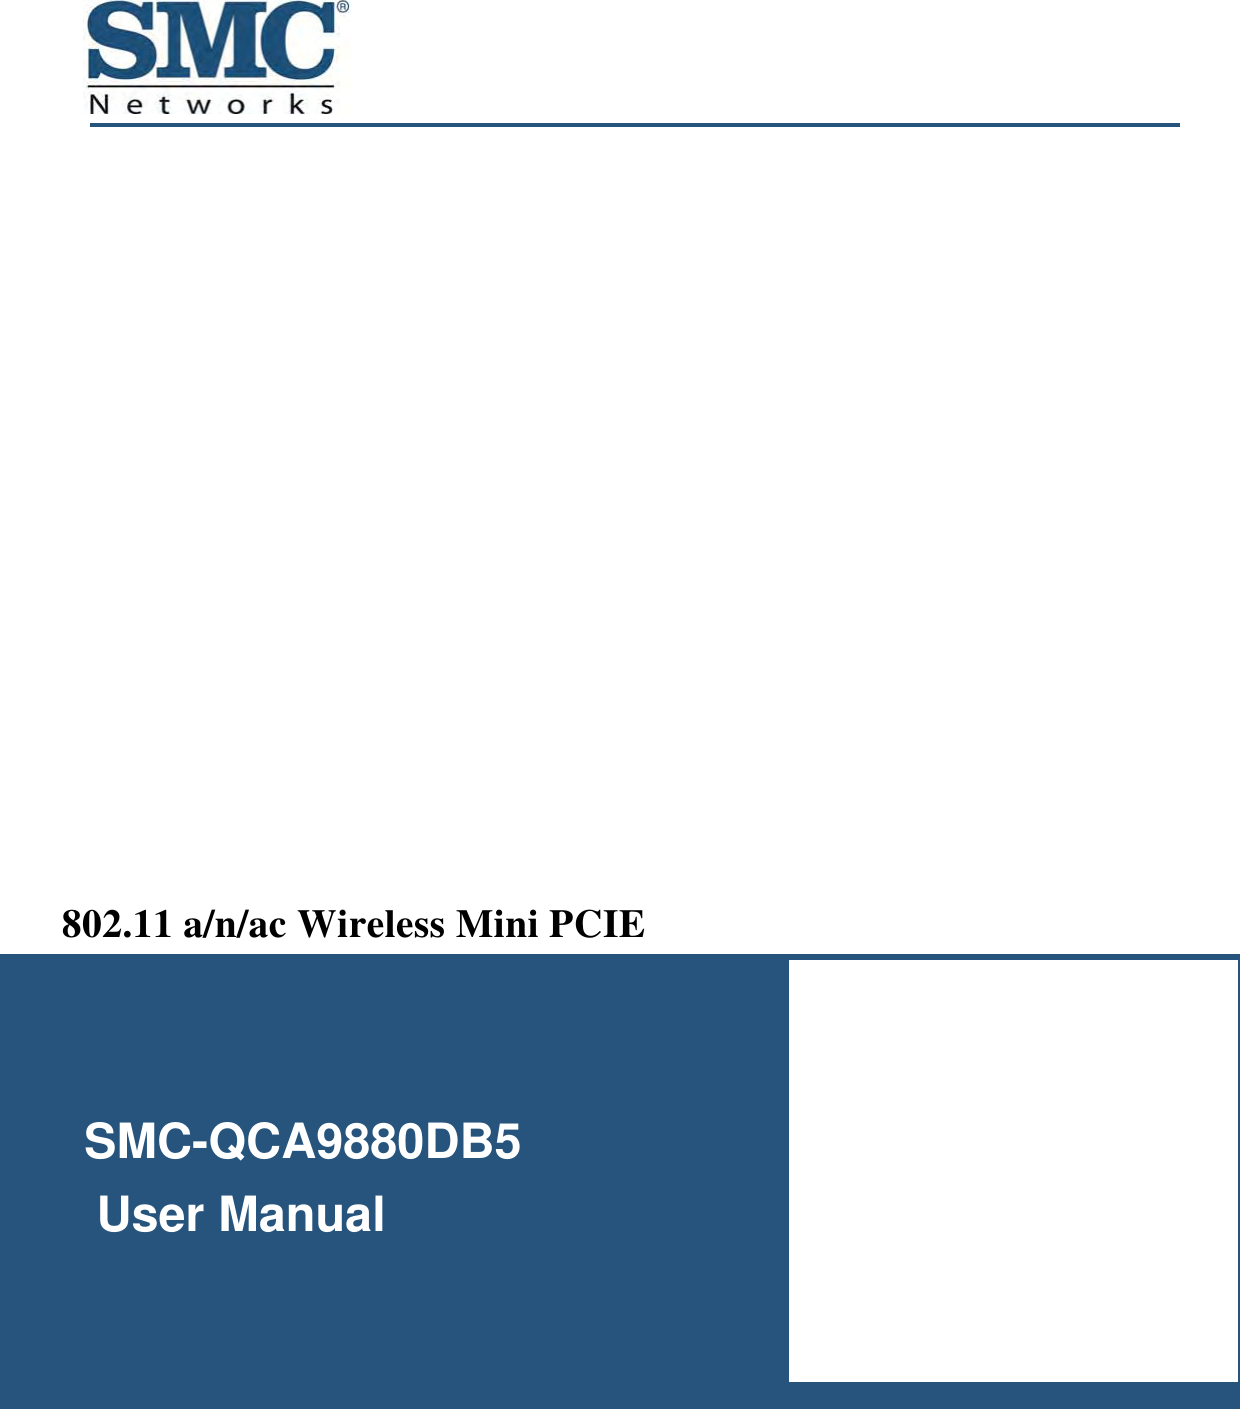    SMC-QCA9880DB5     User Manual  802.11 a/n/ac Wireless Mini PCIE  